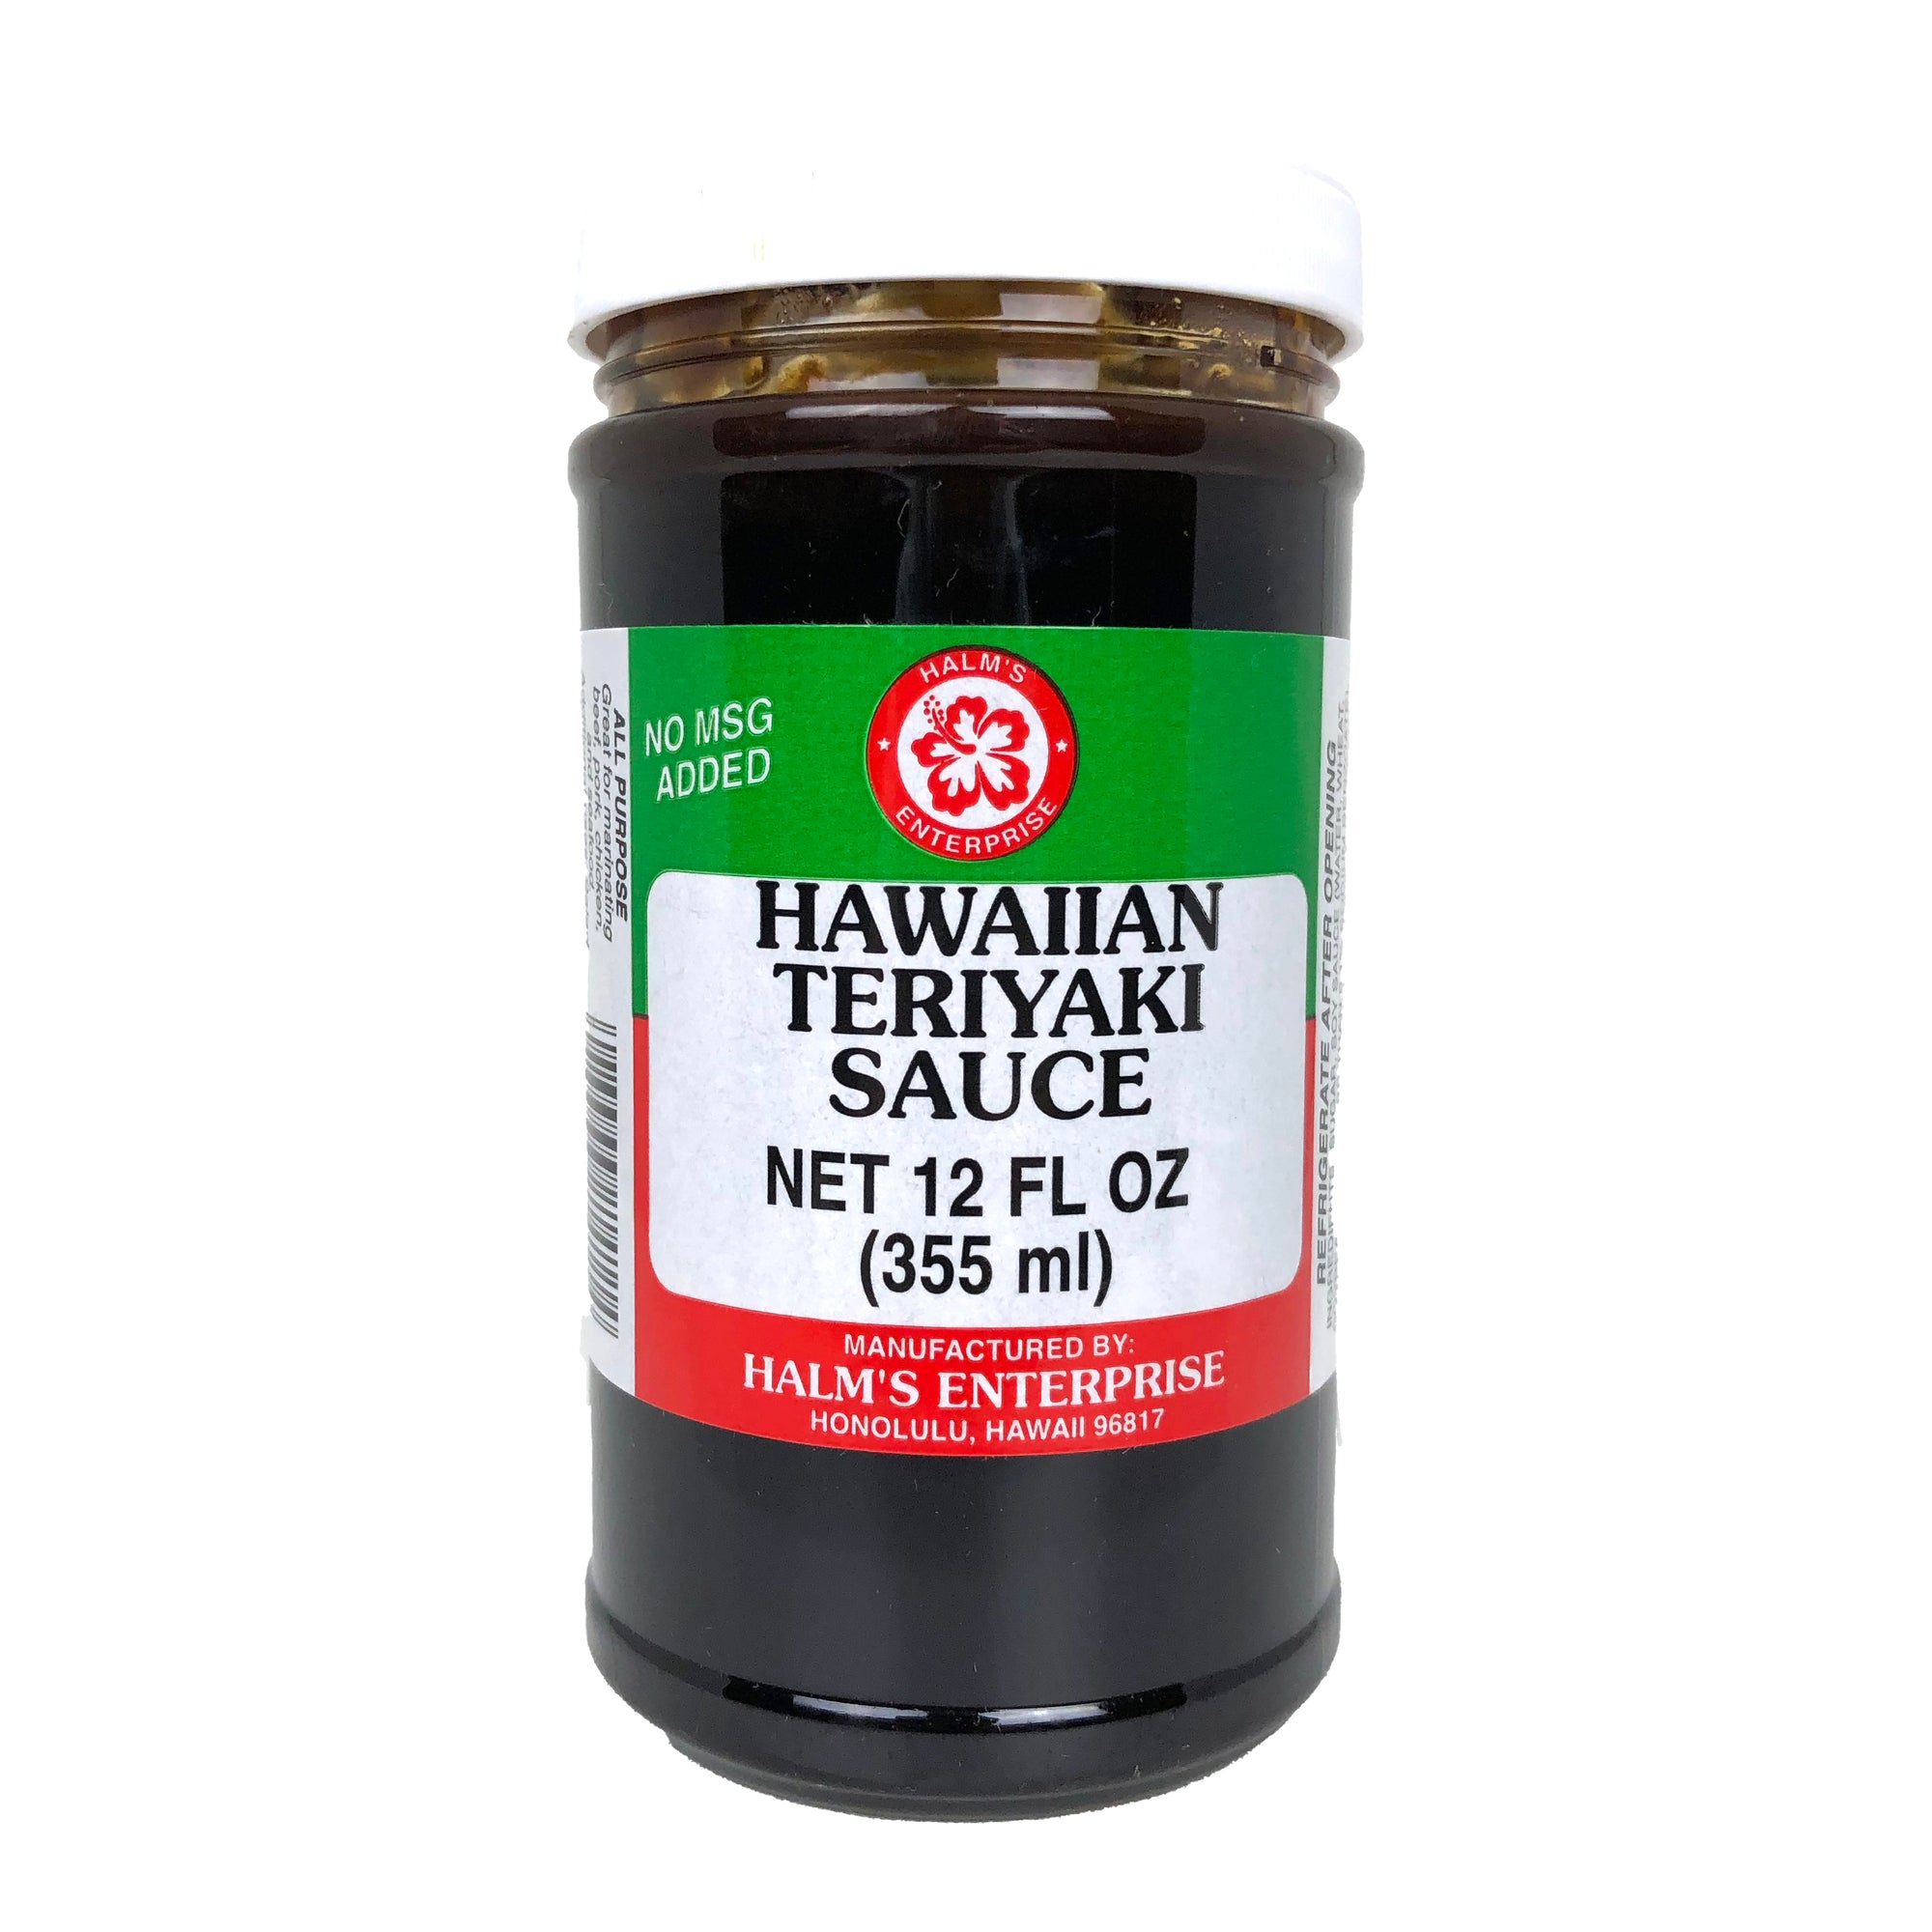 Halm's Hawaiian Teriyaki Sauce